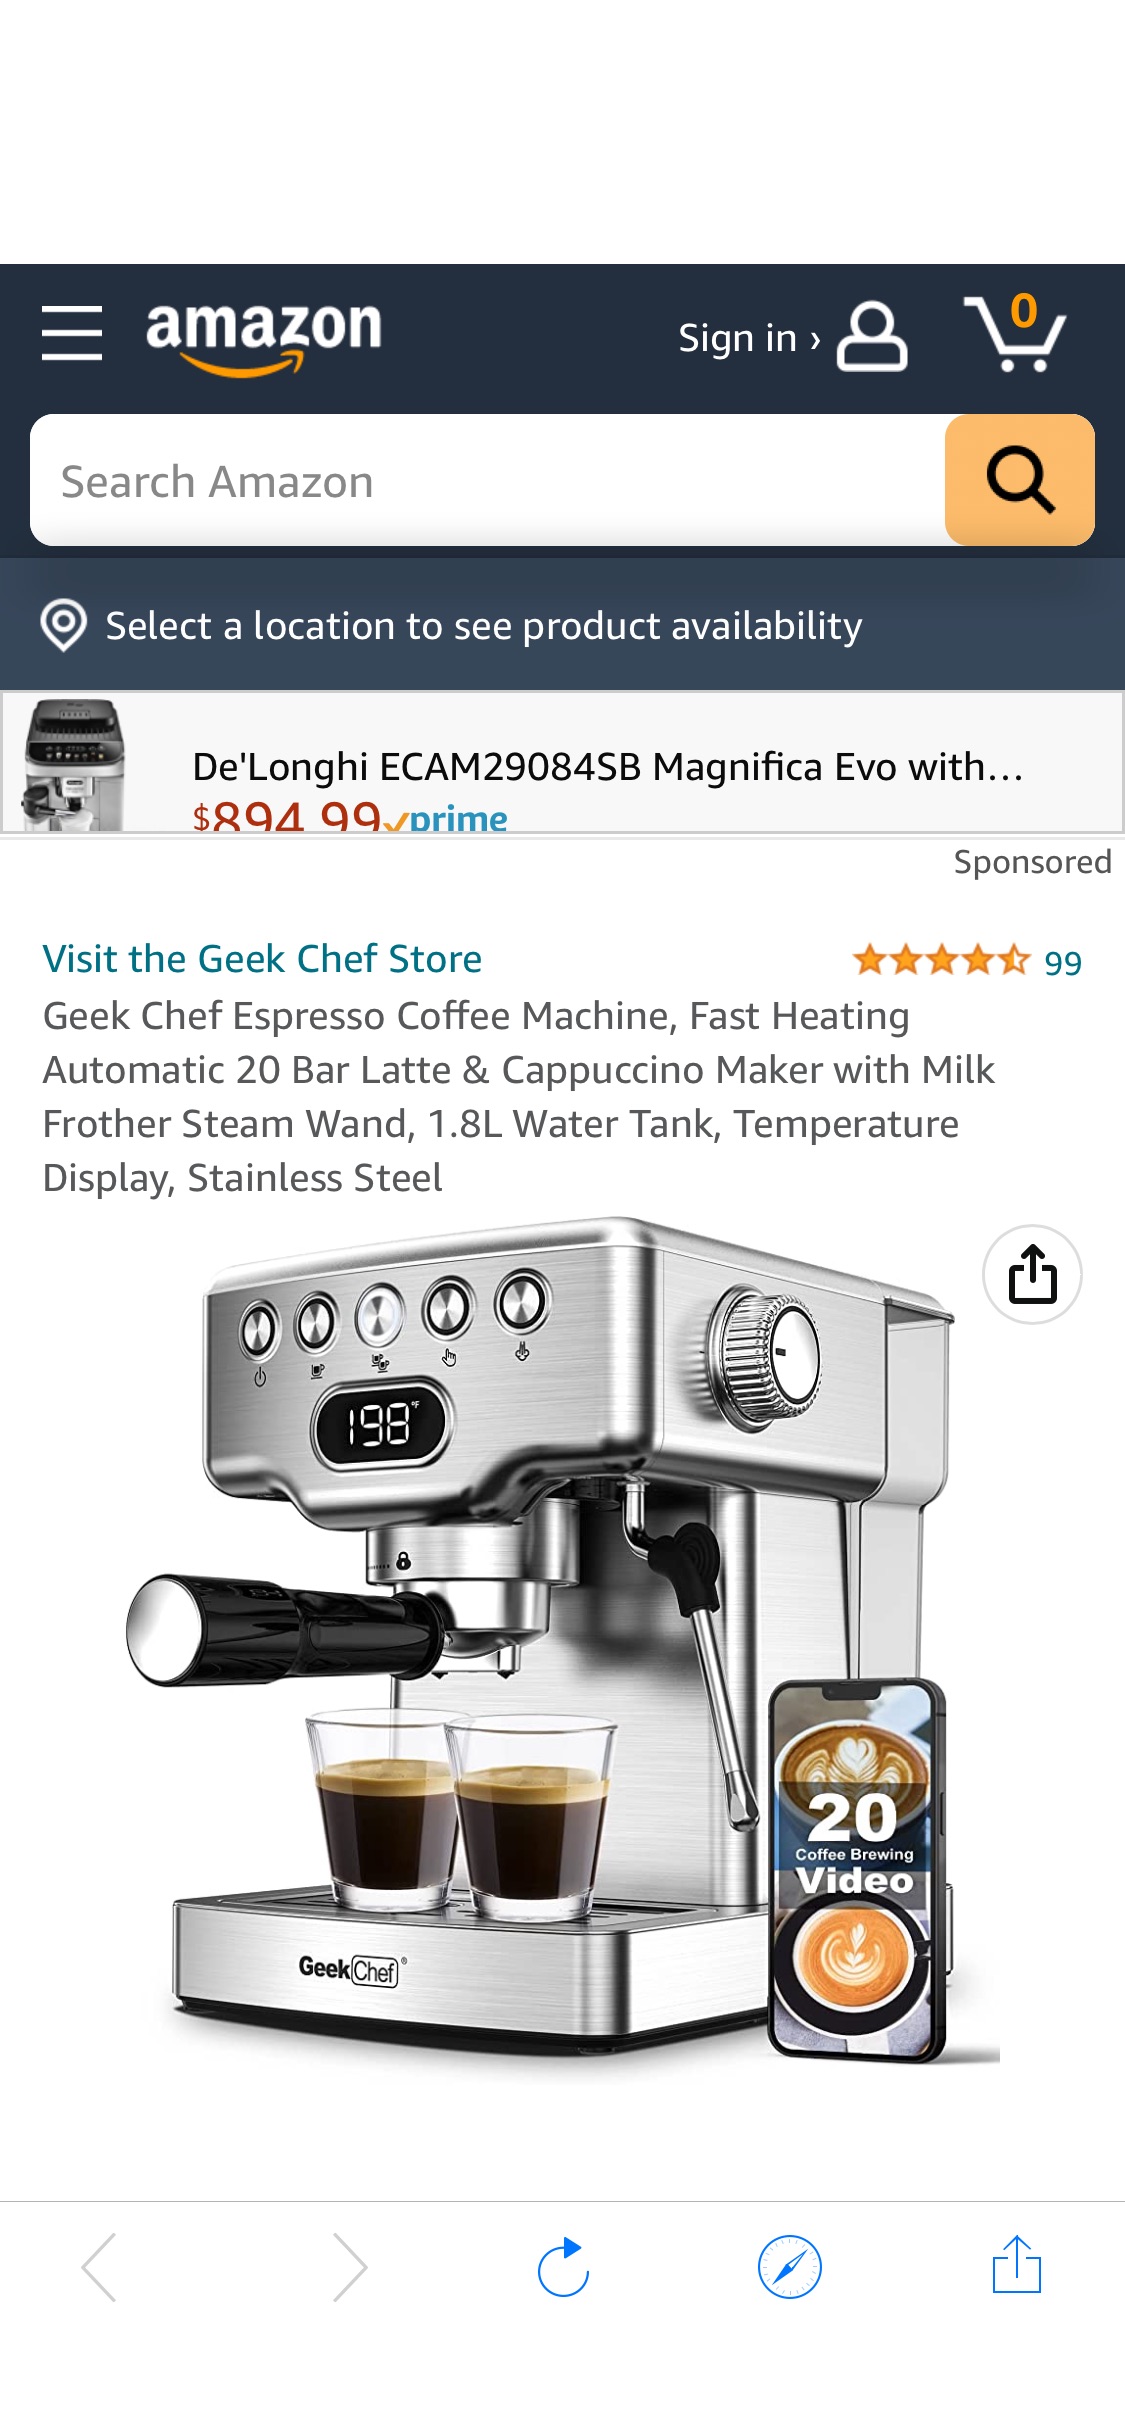 折后109.99 美元，原价249.98 美元 ，折扣码：56CCGDB8

意式浓缩咖啡机，快速加热自动 20种模式，巴拿铁和卡布奇诺咖啡机，带奶泡器蒸汽棒，带温度显示，不锈钢材质